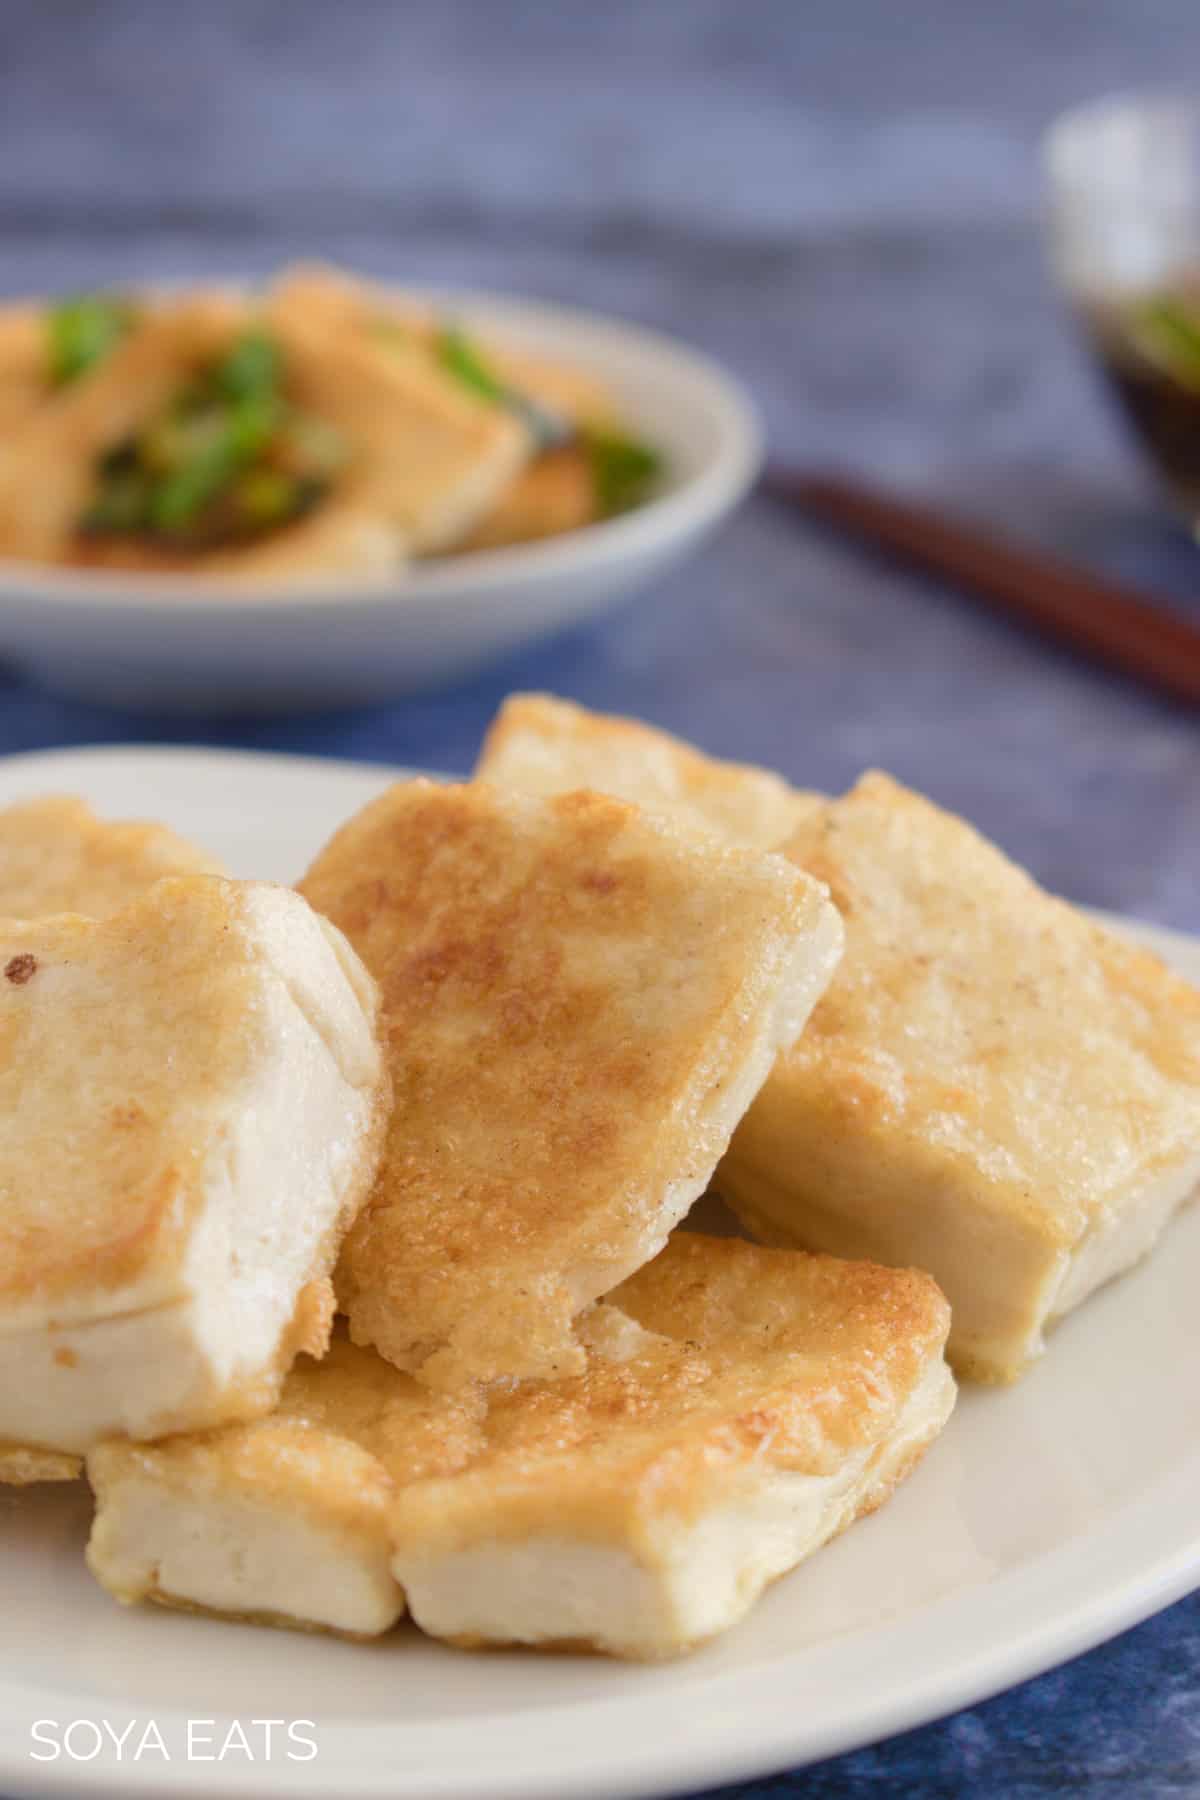 A closeup of fried tofu without sauce.